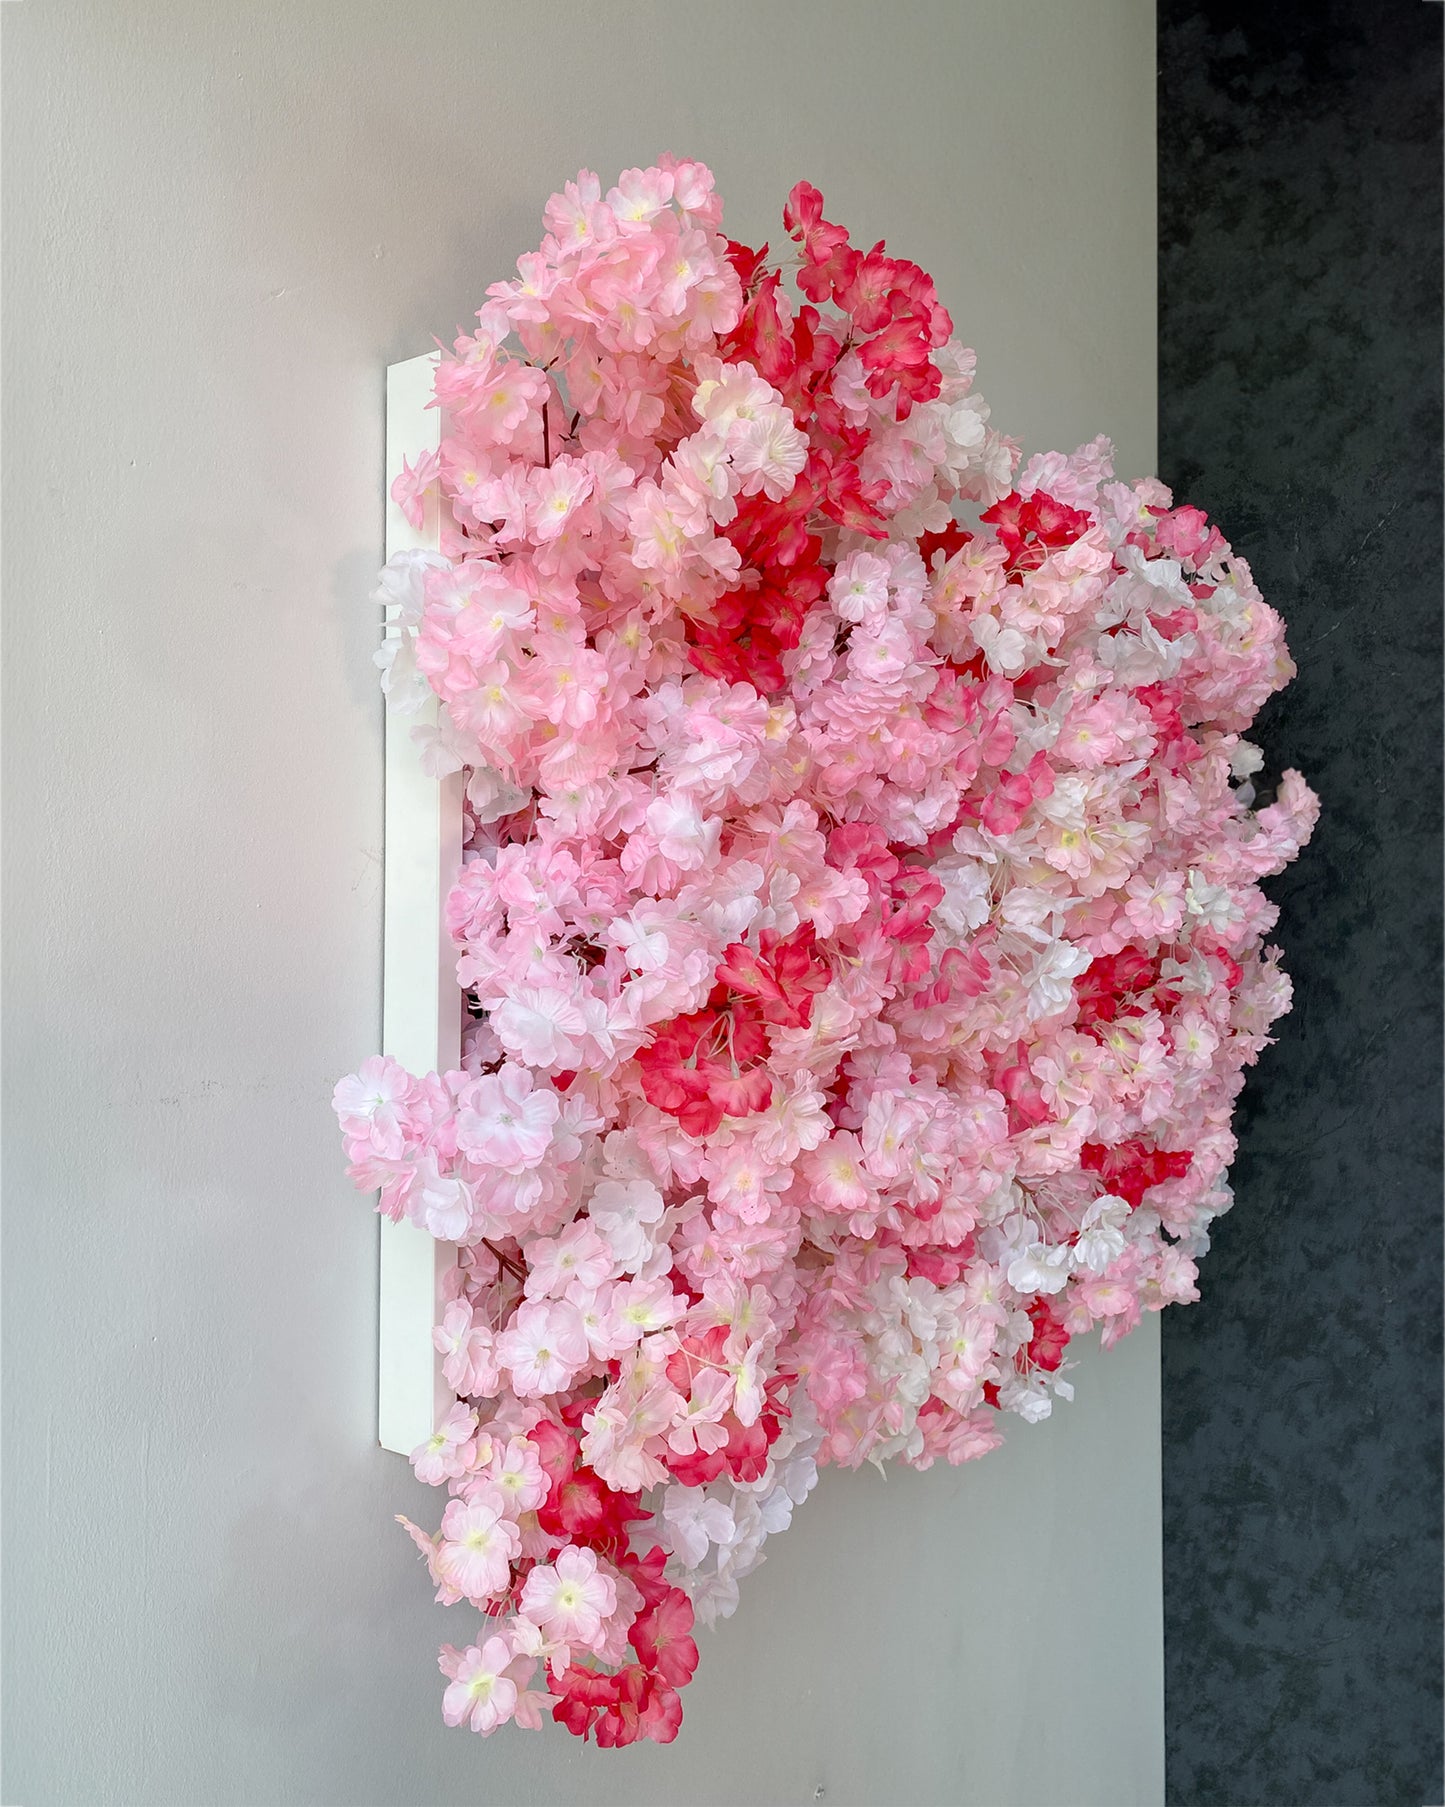 Flowerframe "CHERRY BLOSSOM" aus Realtouch Kunstpflanzen, Holzrahmen mit weißem Decor